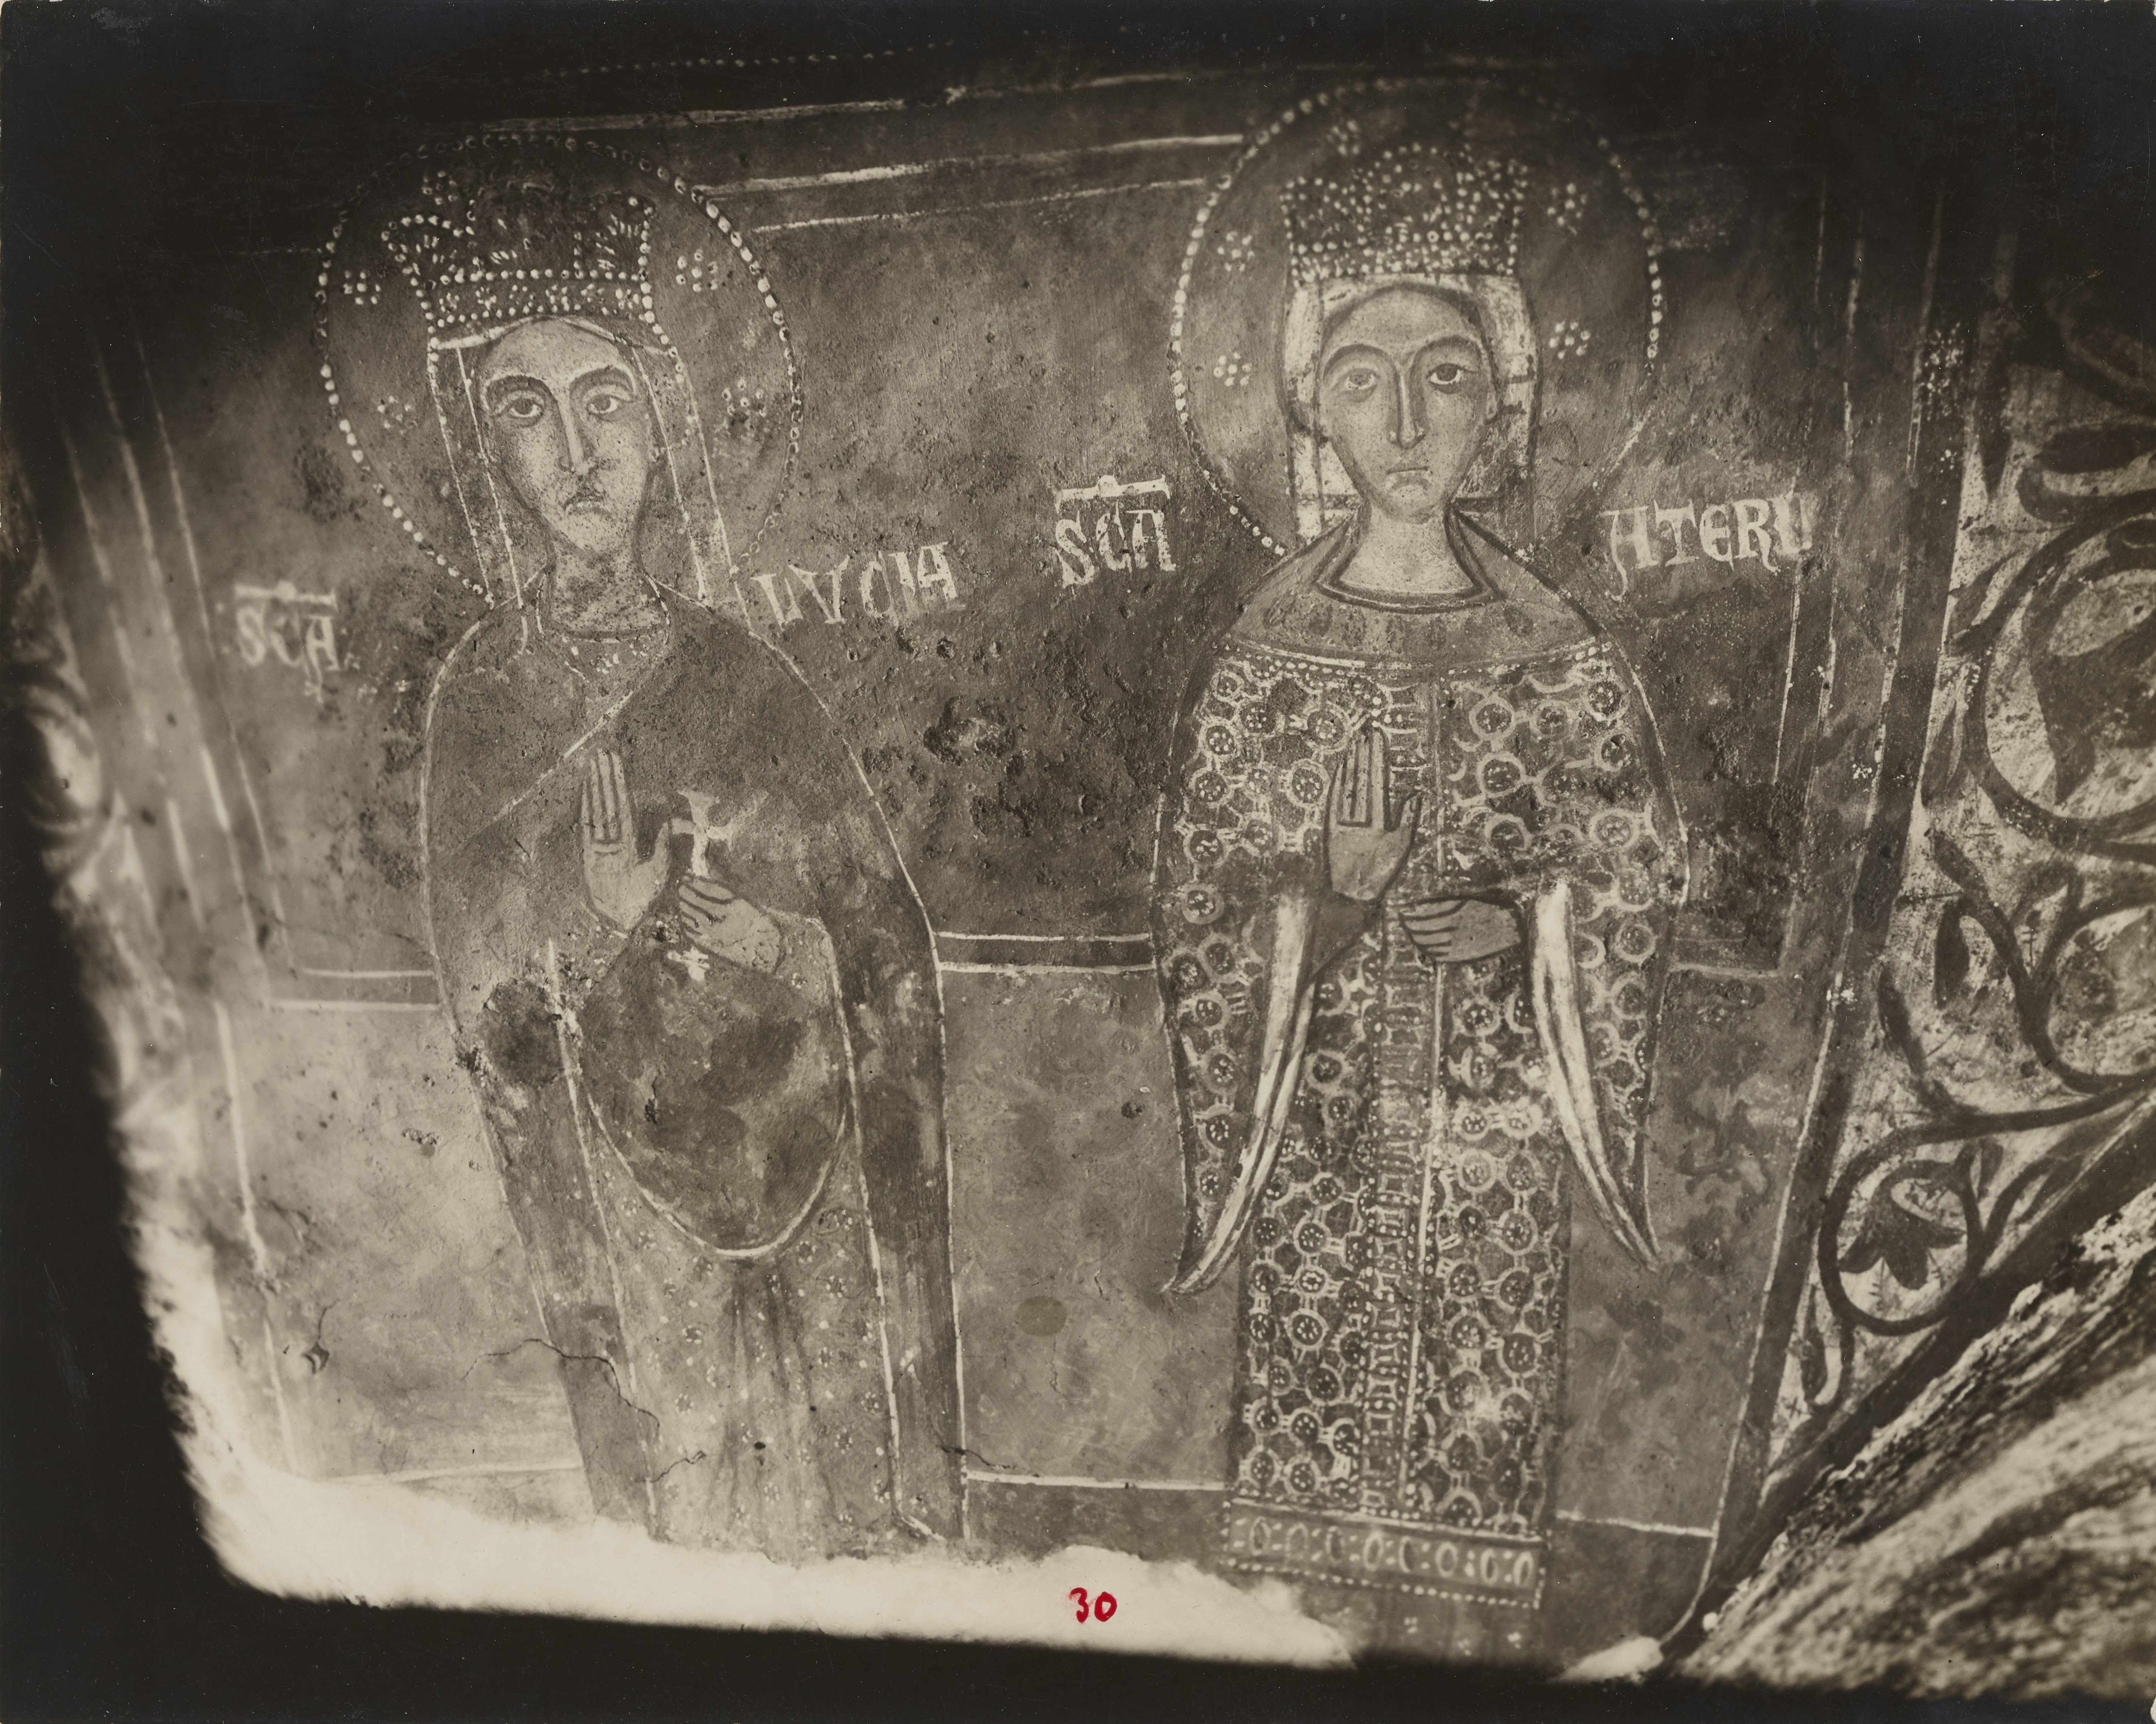 Fotografo non identificato, Melfi - Chiesa rupestre di S. Margherita, S. Lucia, S. Caterina, 1926-1950, gelatina ai sali d'argento, MPI6061796